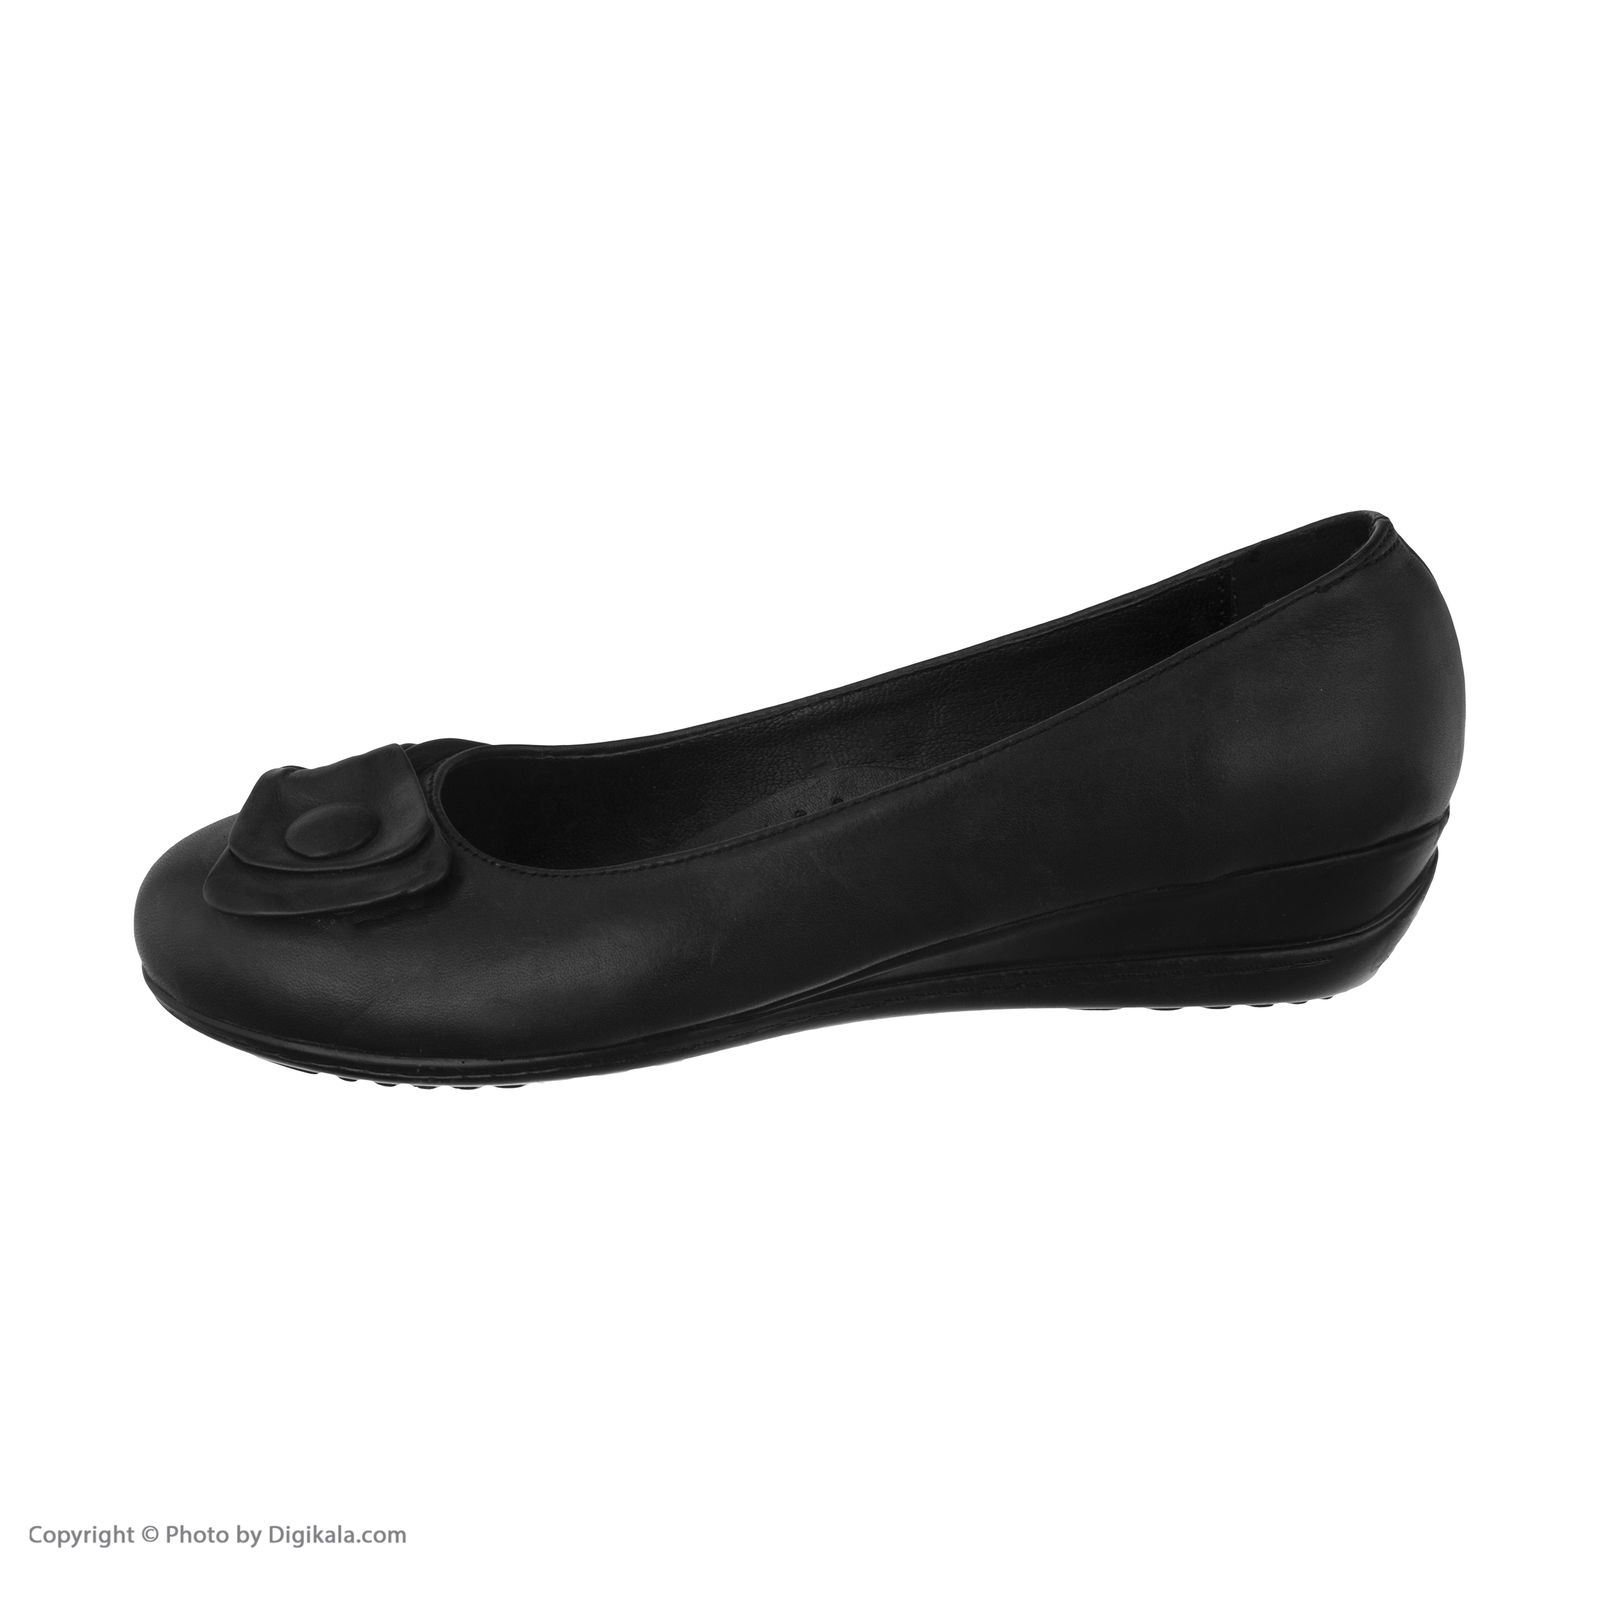 کفش زنانه ساتین مدل 5m16a500101 -  - 3